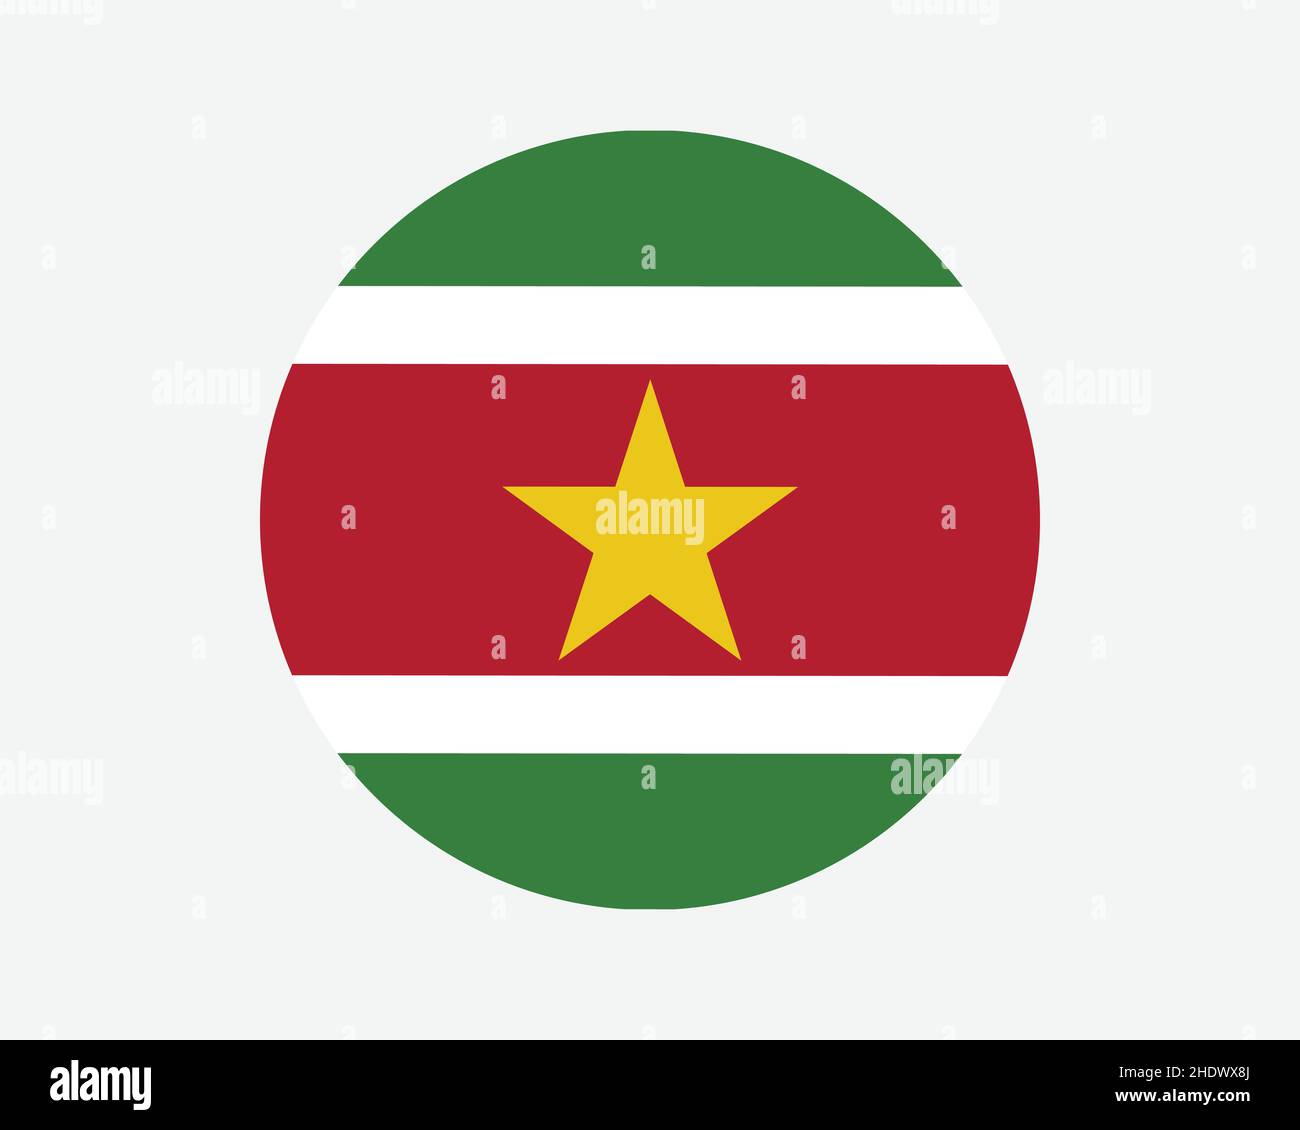 Suriname Round Country Flagge. Flagge Des Surinamesischen Kreises. Rundschreiben-Knopfbanner der Republik Surinam. EPS-Vektorgrafik. Stock Vektor